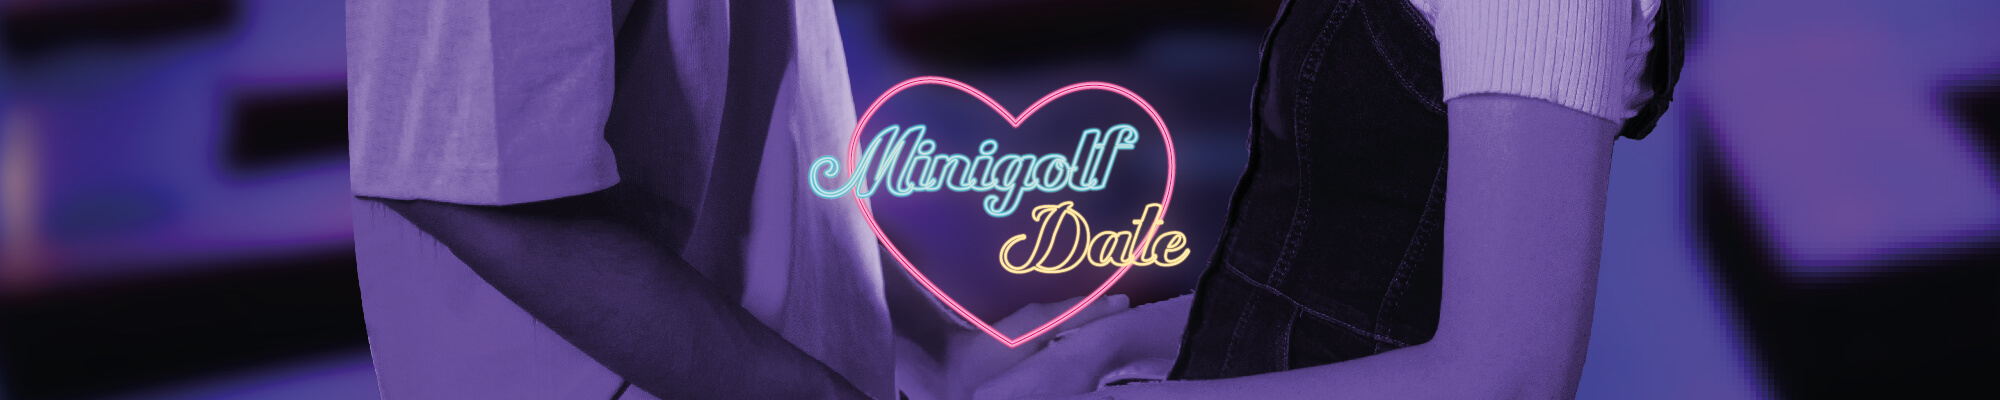 Langes Bannerbild mit einem Paar in Teilansicht und einem Neonherz mit der Aufschrift "Minigolf Date" inmitten einer verschwommenen, blauen Umgebung, ideal für eine romantische Freizeitaktivität.